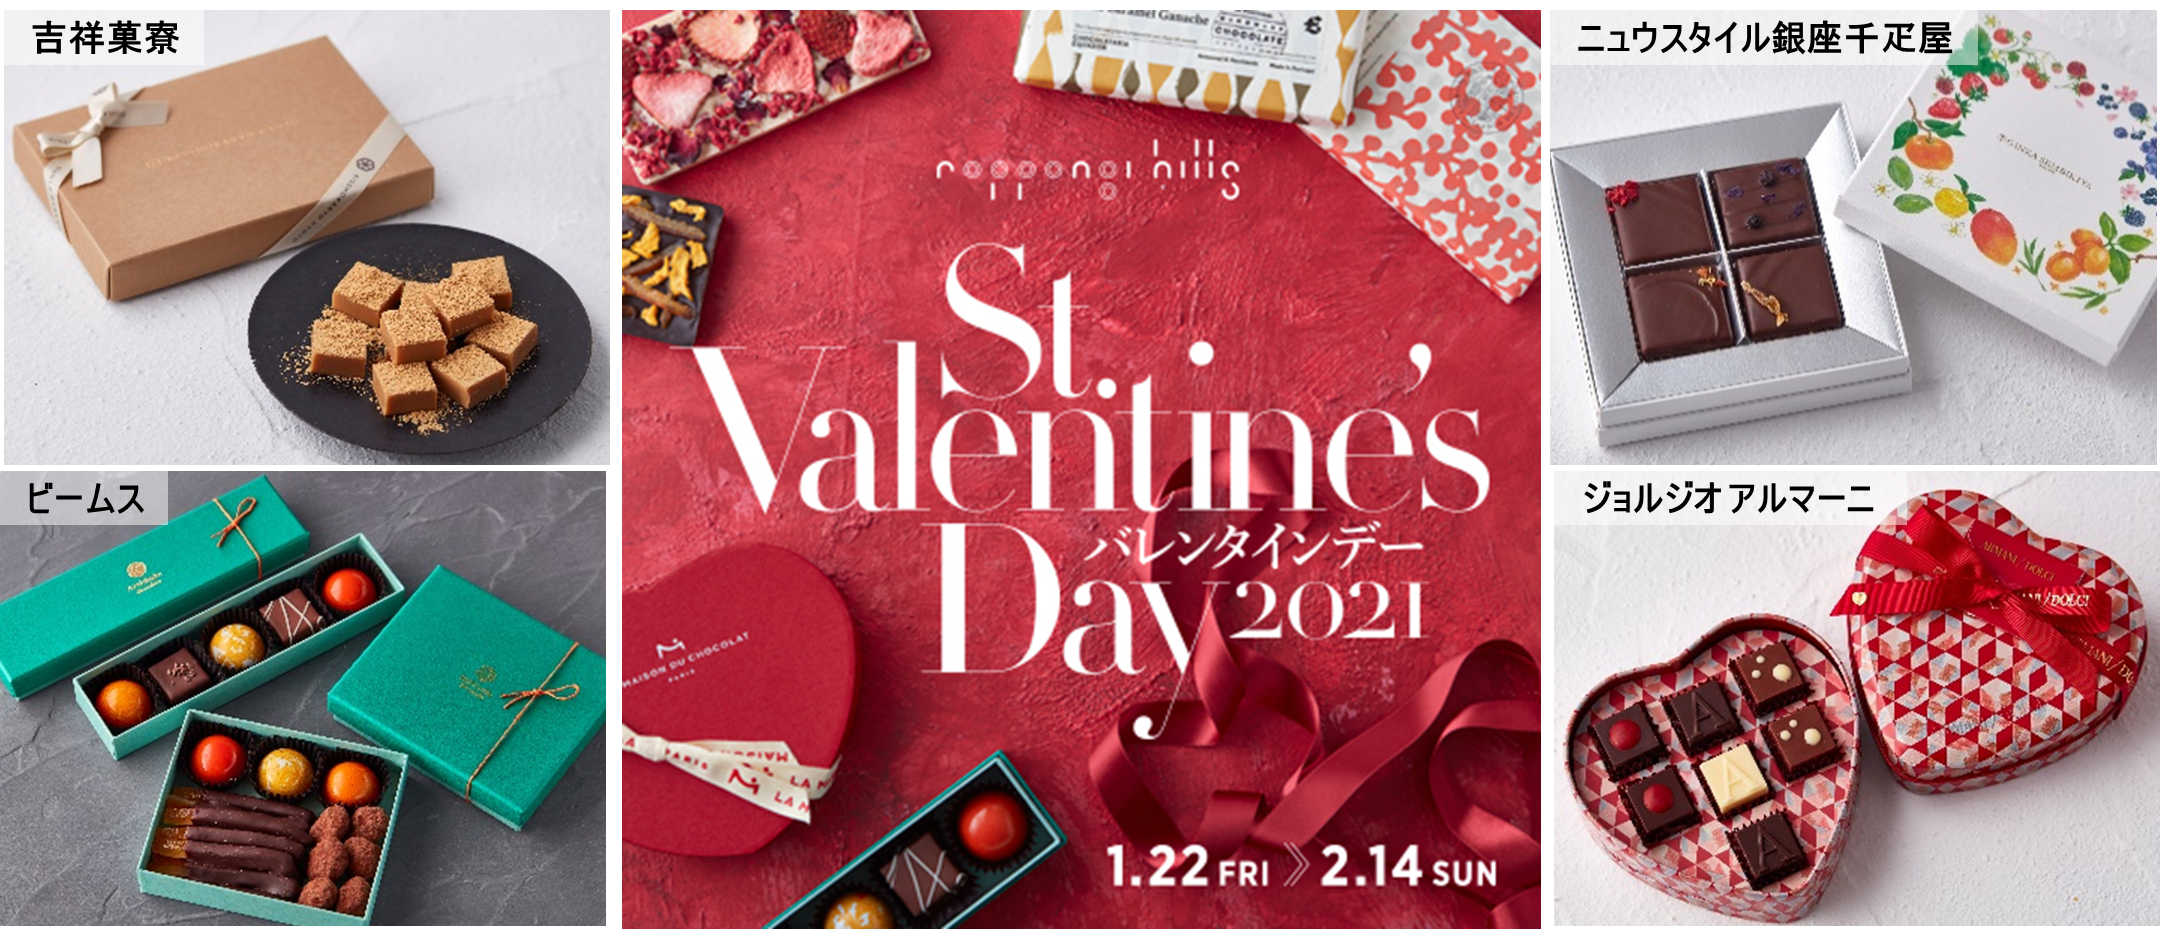 1月22日 金 2月14 日 注目の 和 の食材や 国産 素材を使った日本らしいチョコレートがそろう Roppongi Hills St Valentine S Day 21 森ビル株式会社のプレスリリース